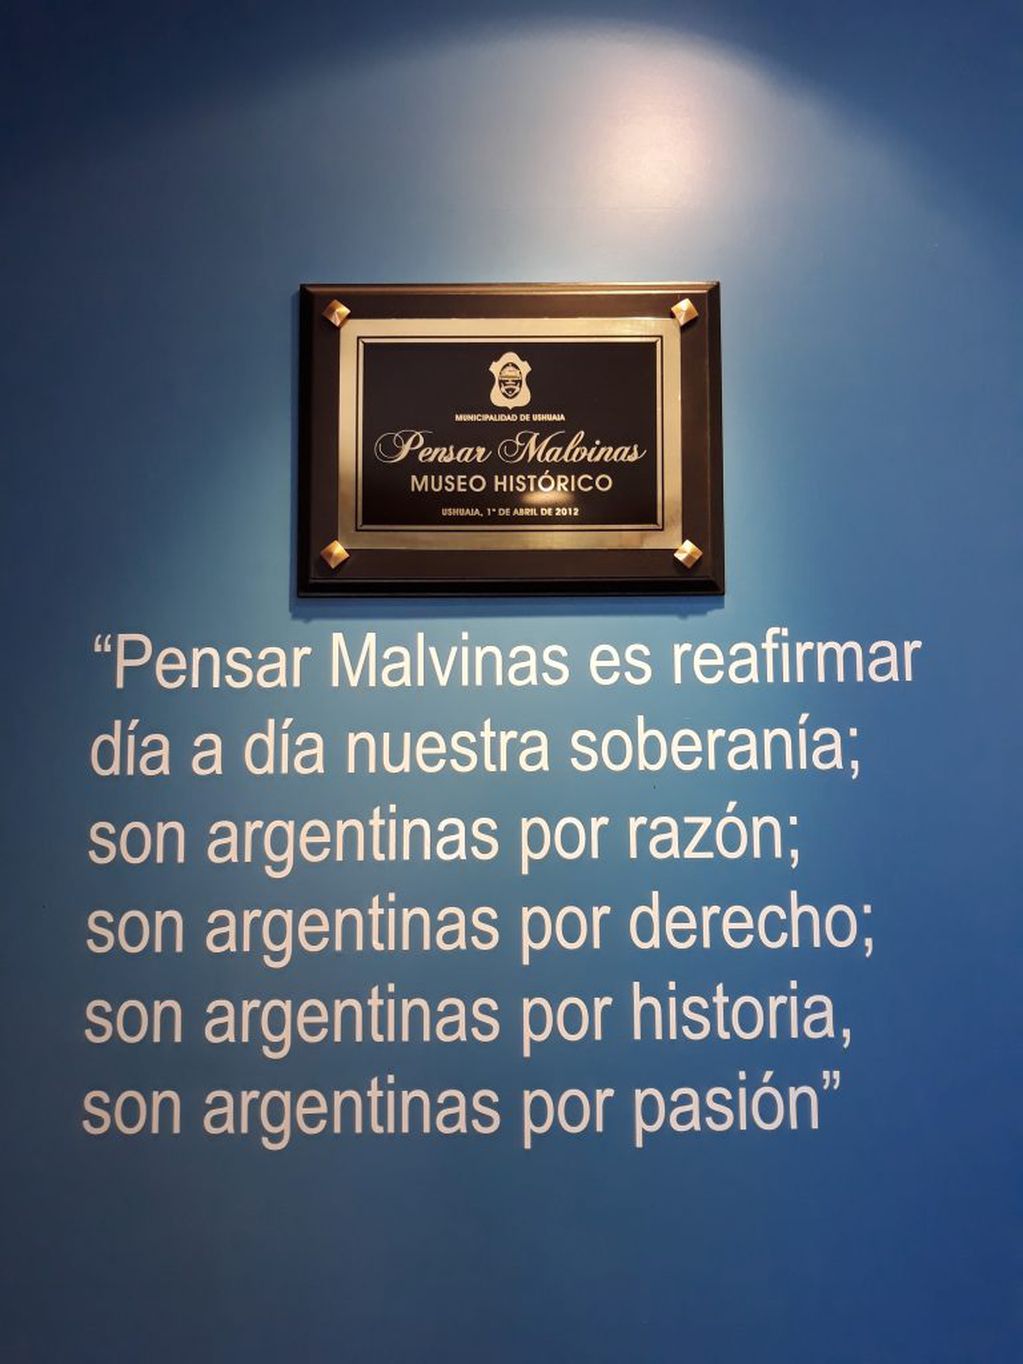 Museo Pensar Malvinas - Ushuaia.